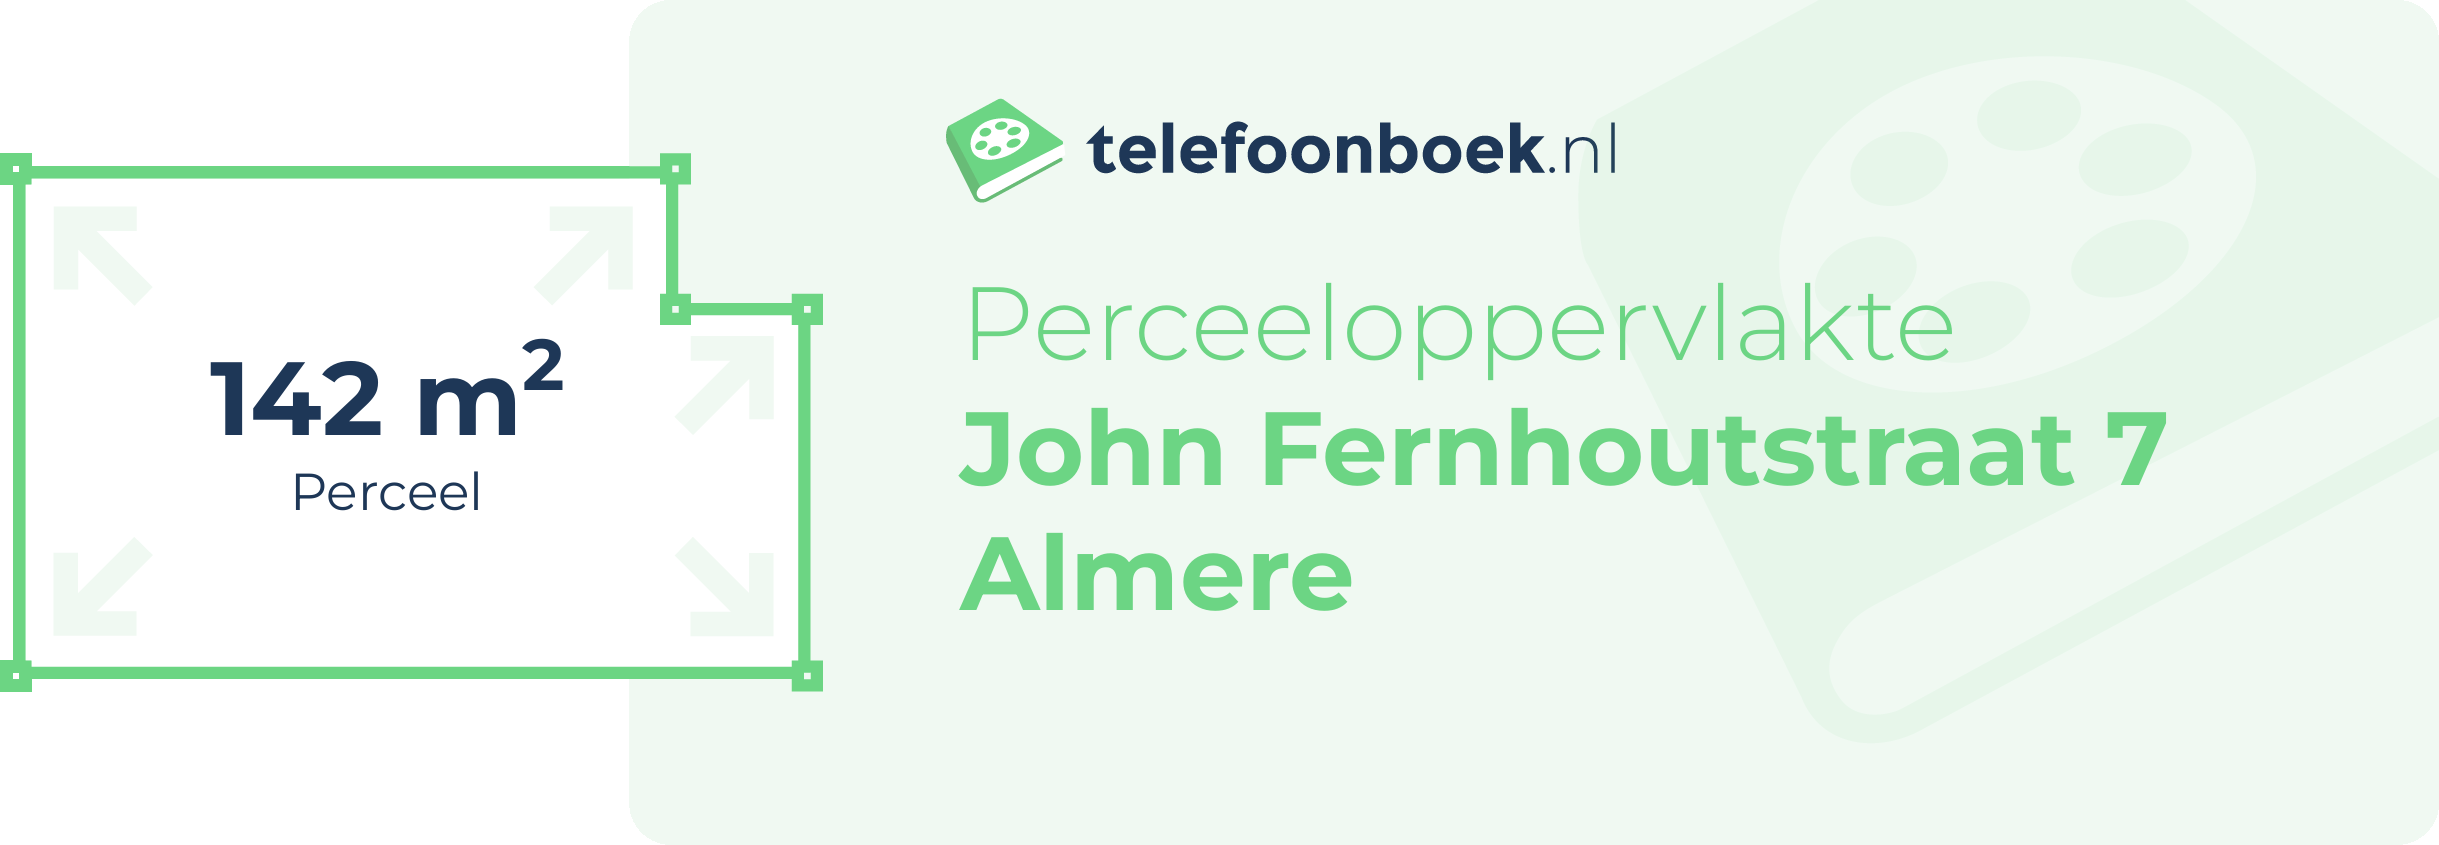 Perceeloppervlakte John Fernhoutstraat 7 Almere